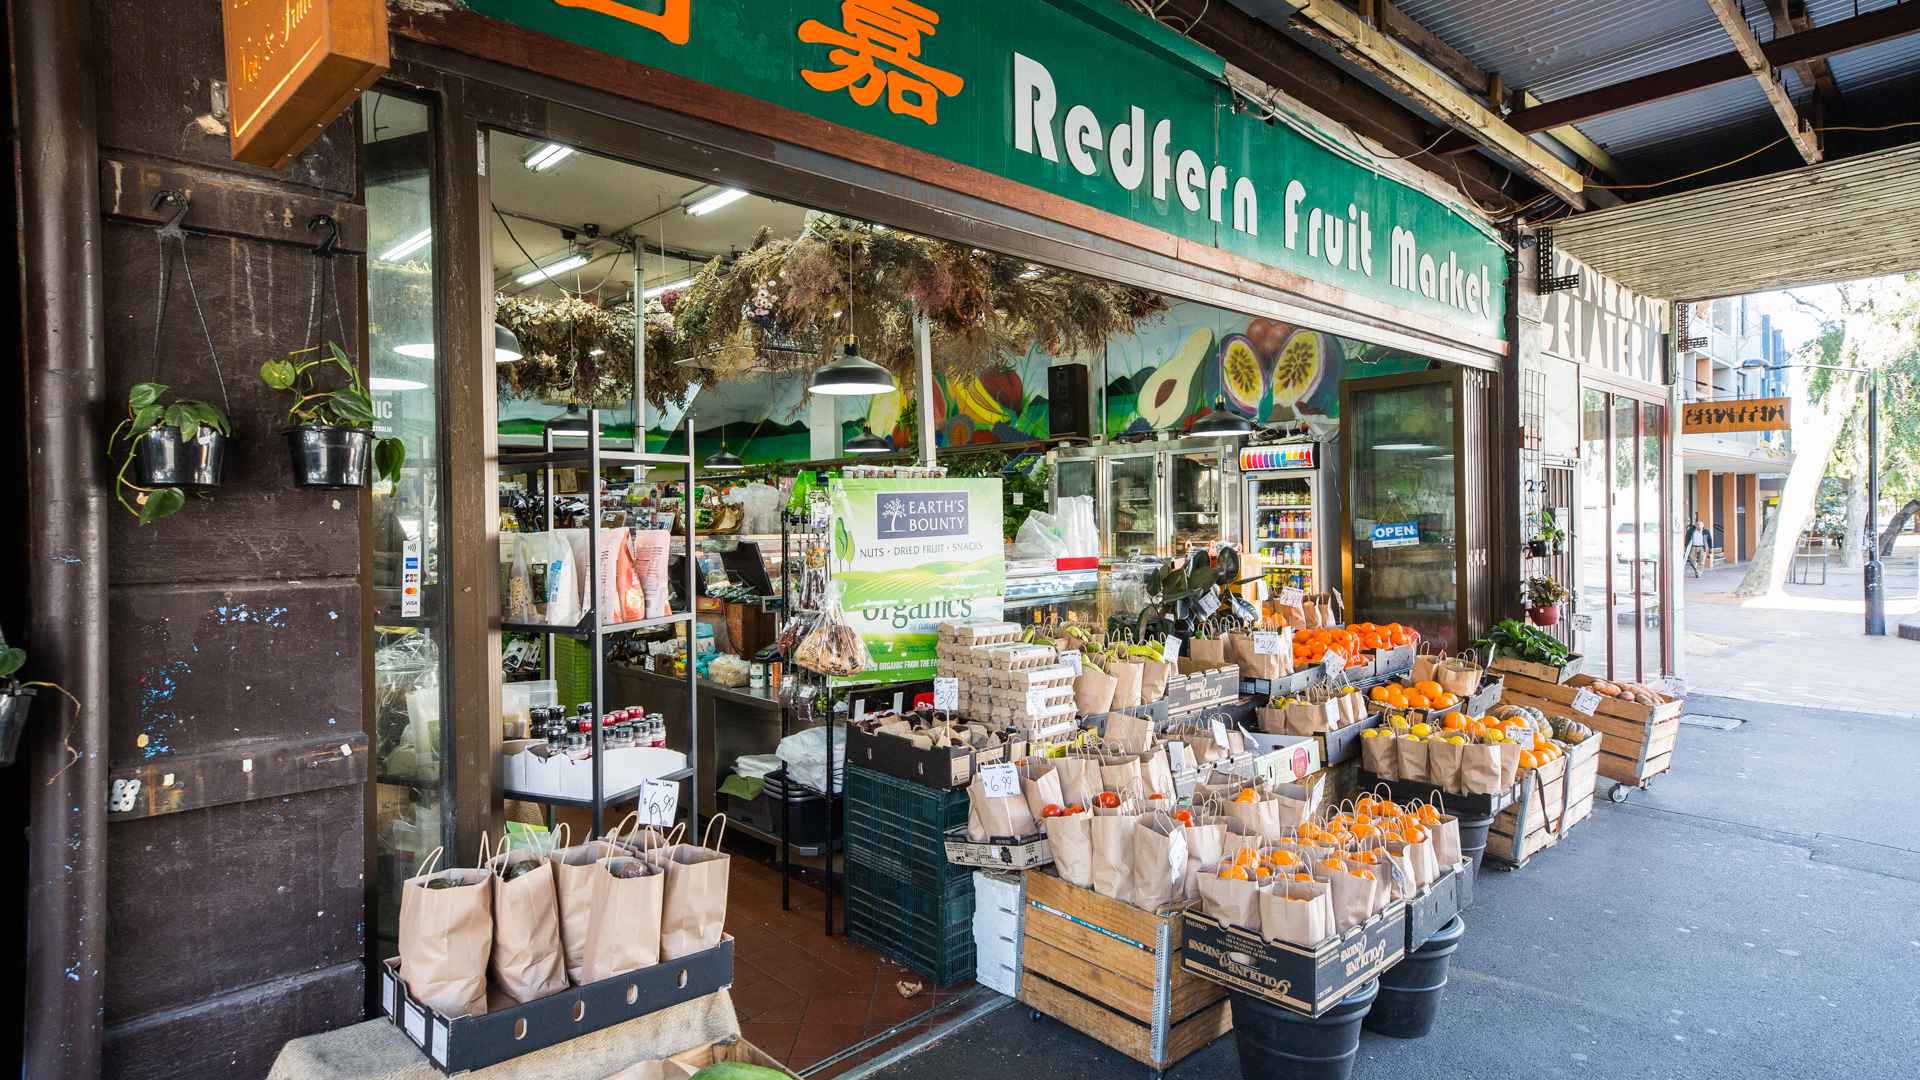 Redfern Fruit Market